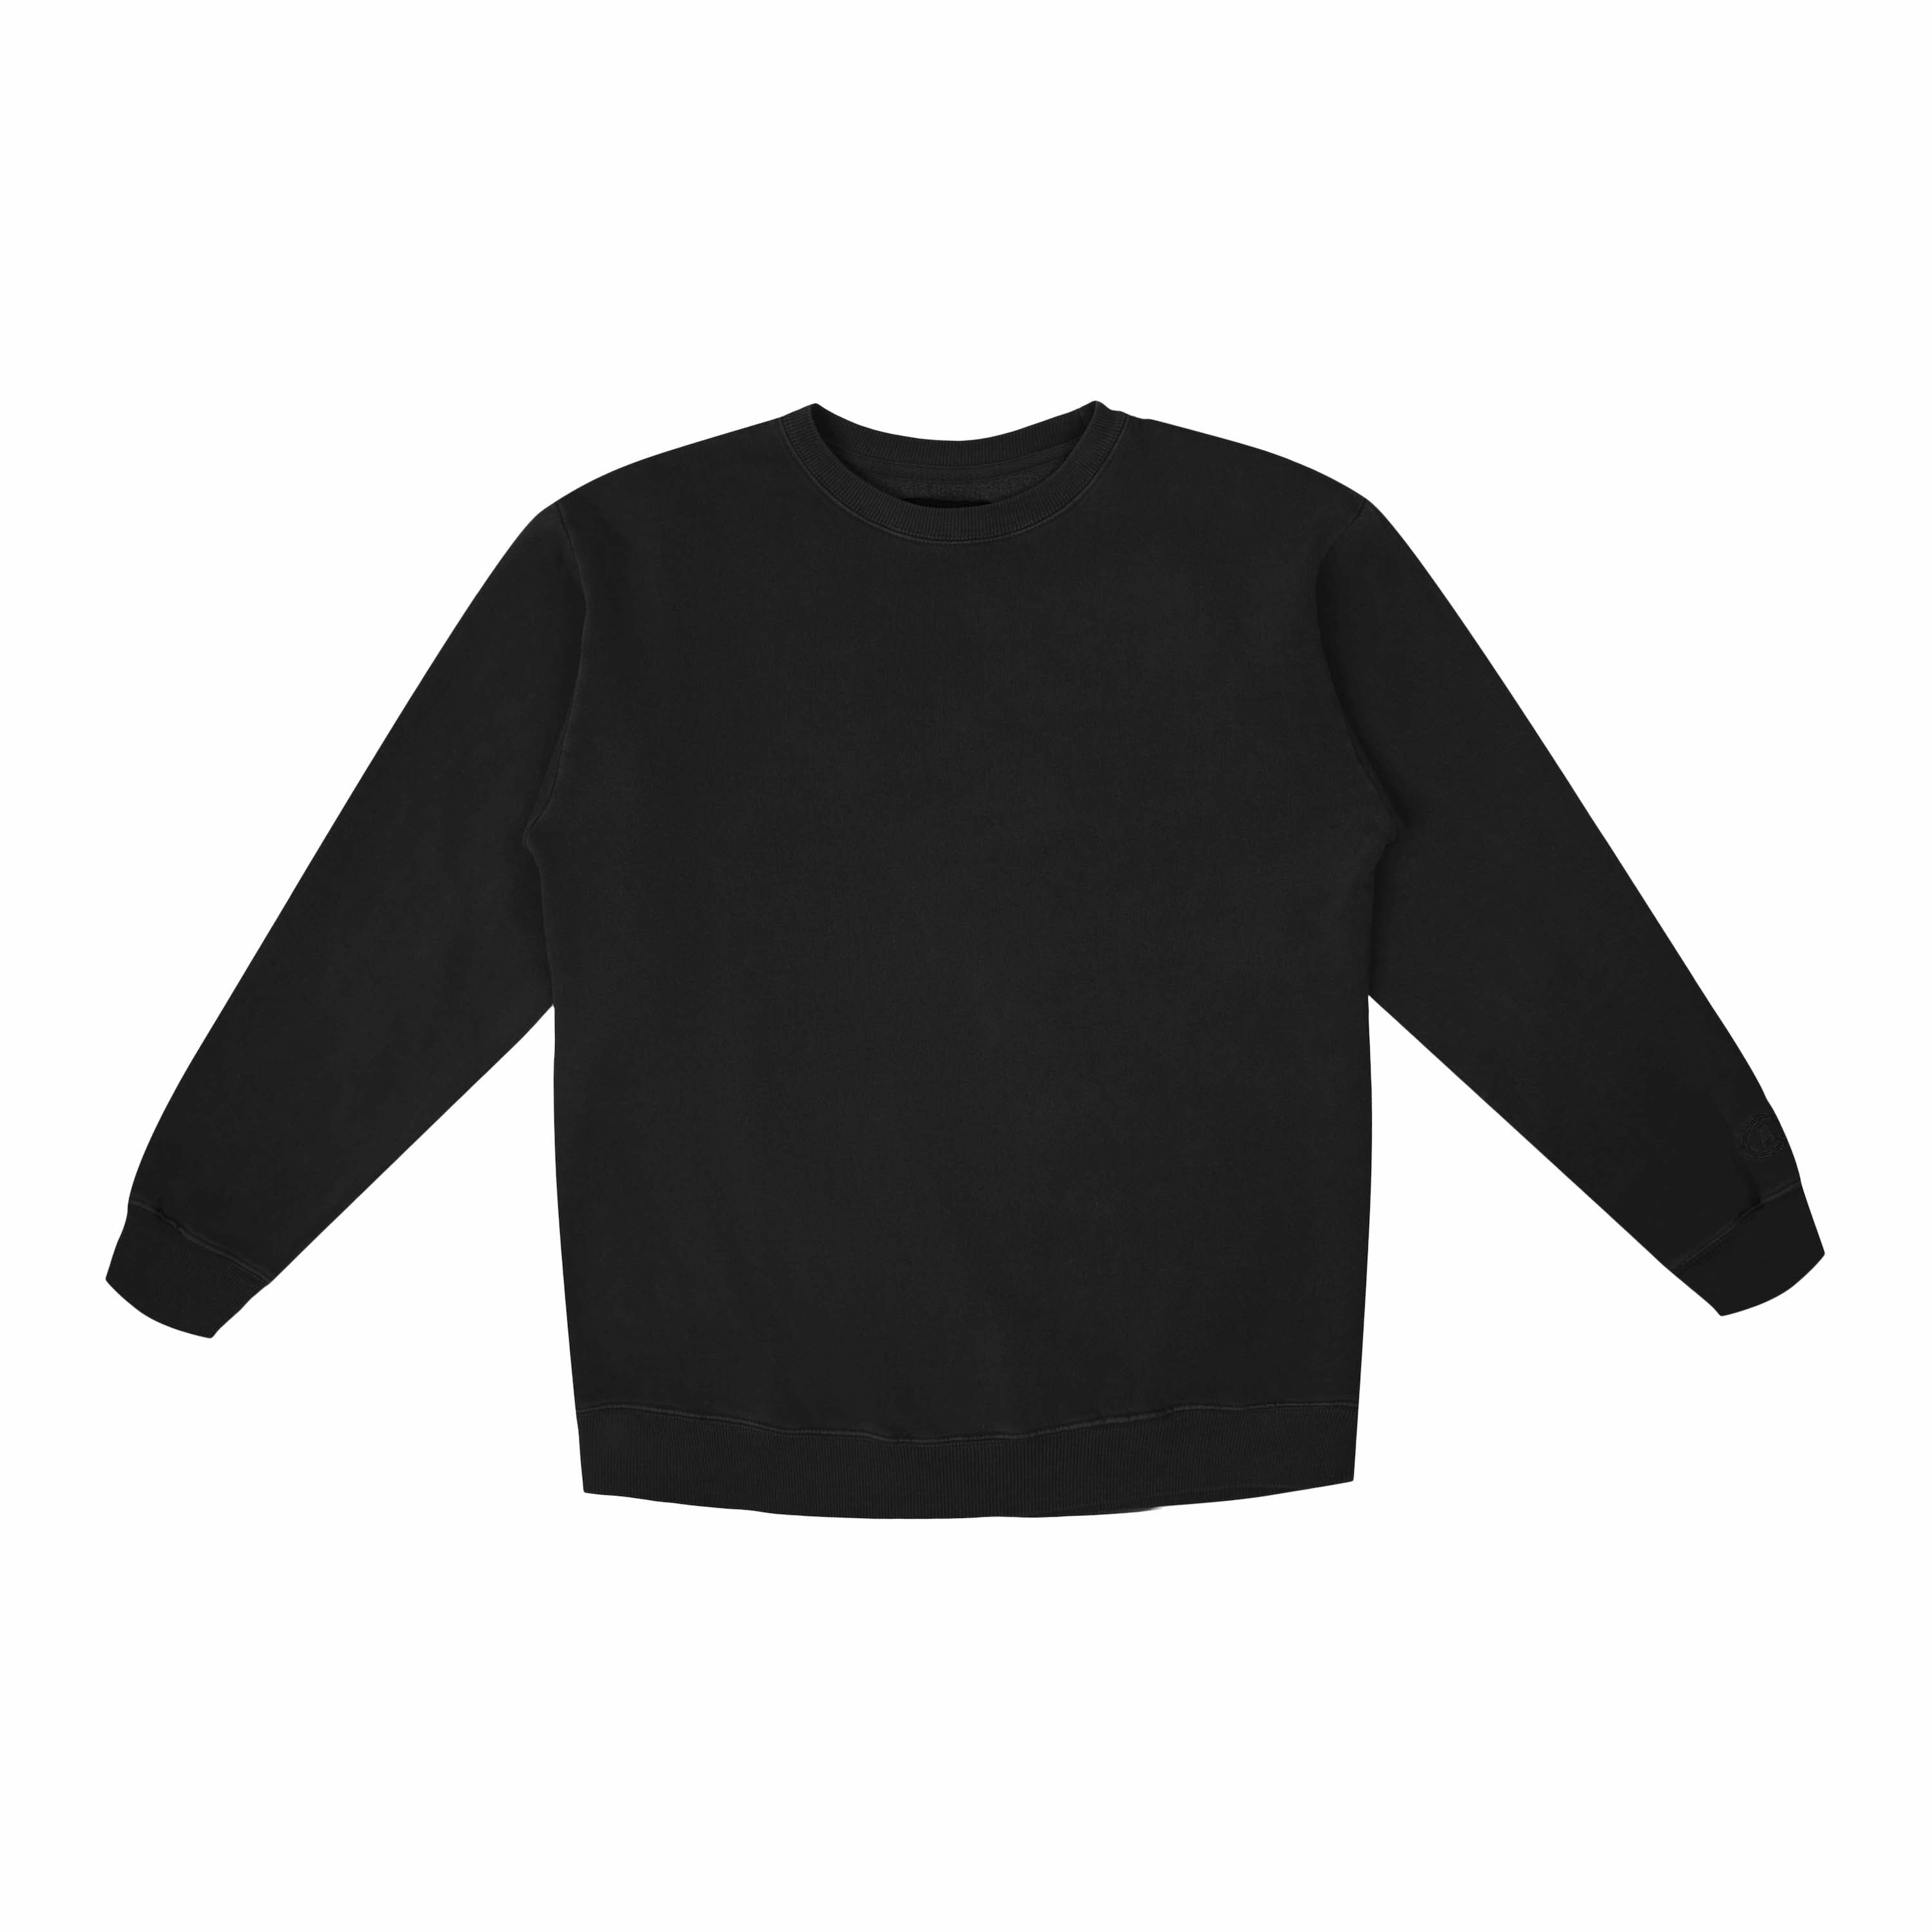 Essential Premium Fleece Sweatshirt - Black